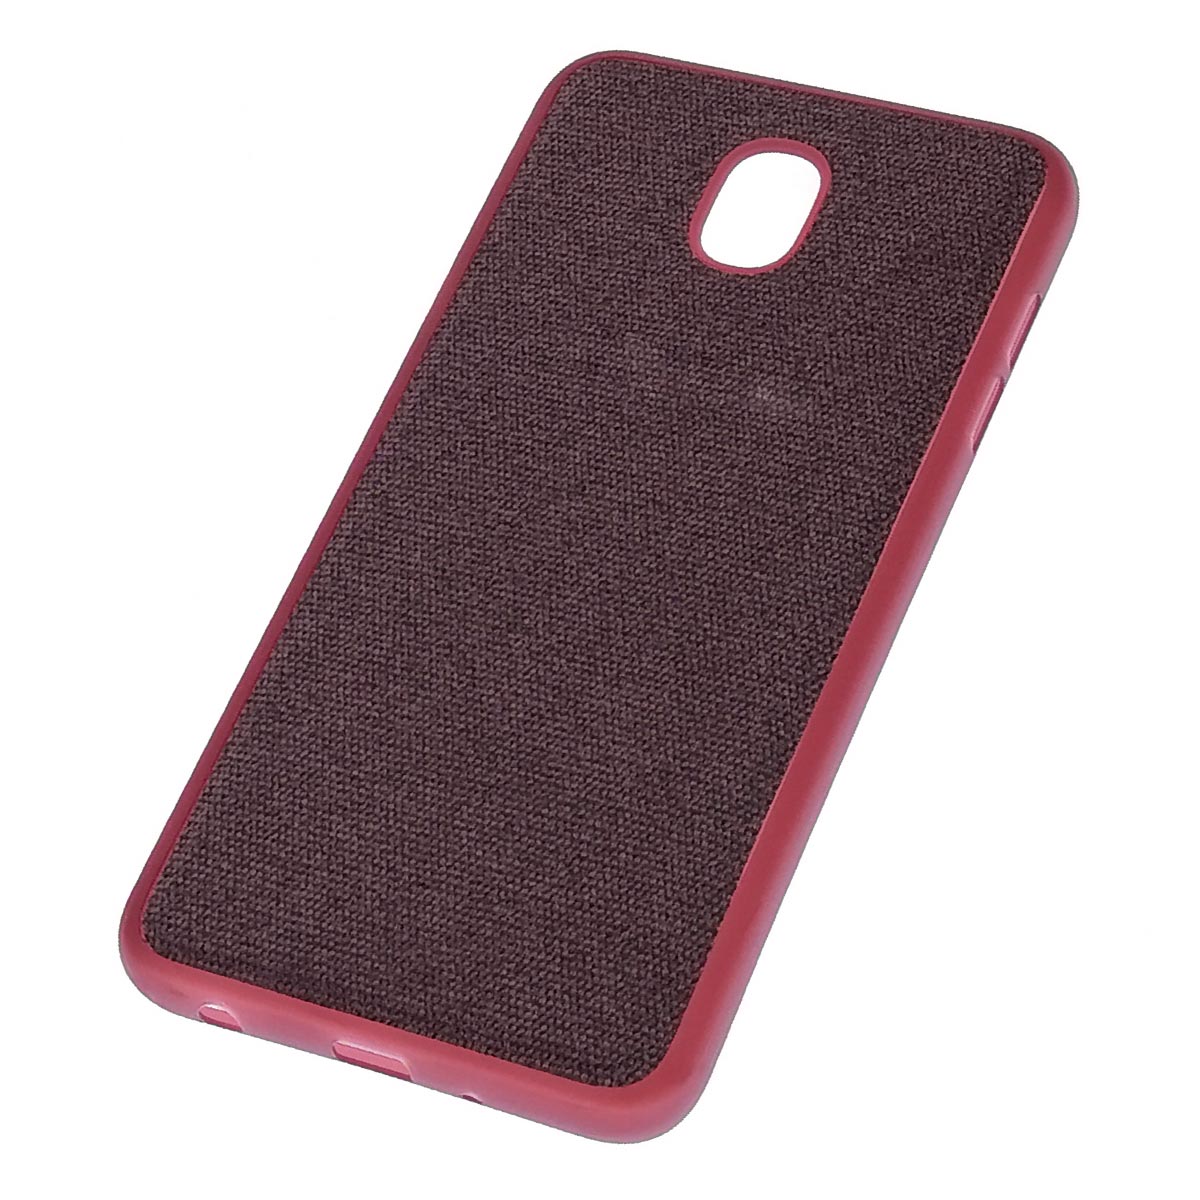 Чехол накладка для SAMSUNG Galaxy J7 2018, силикон, ткань, цвет бордовый